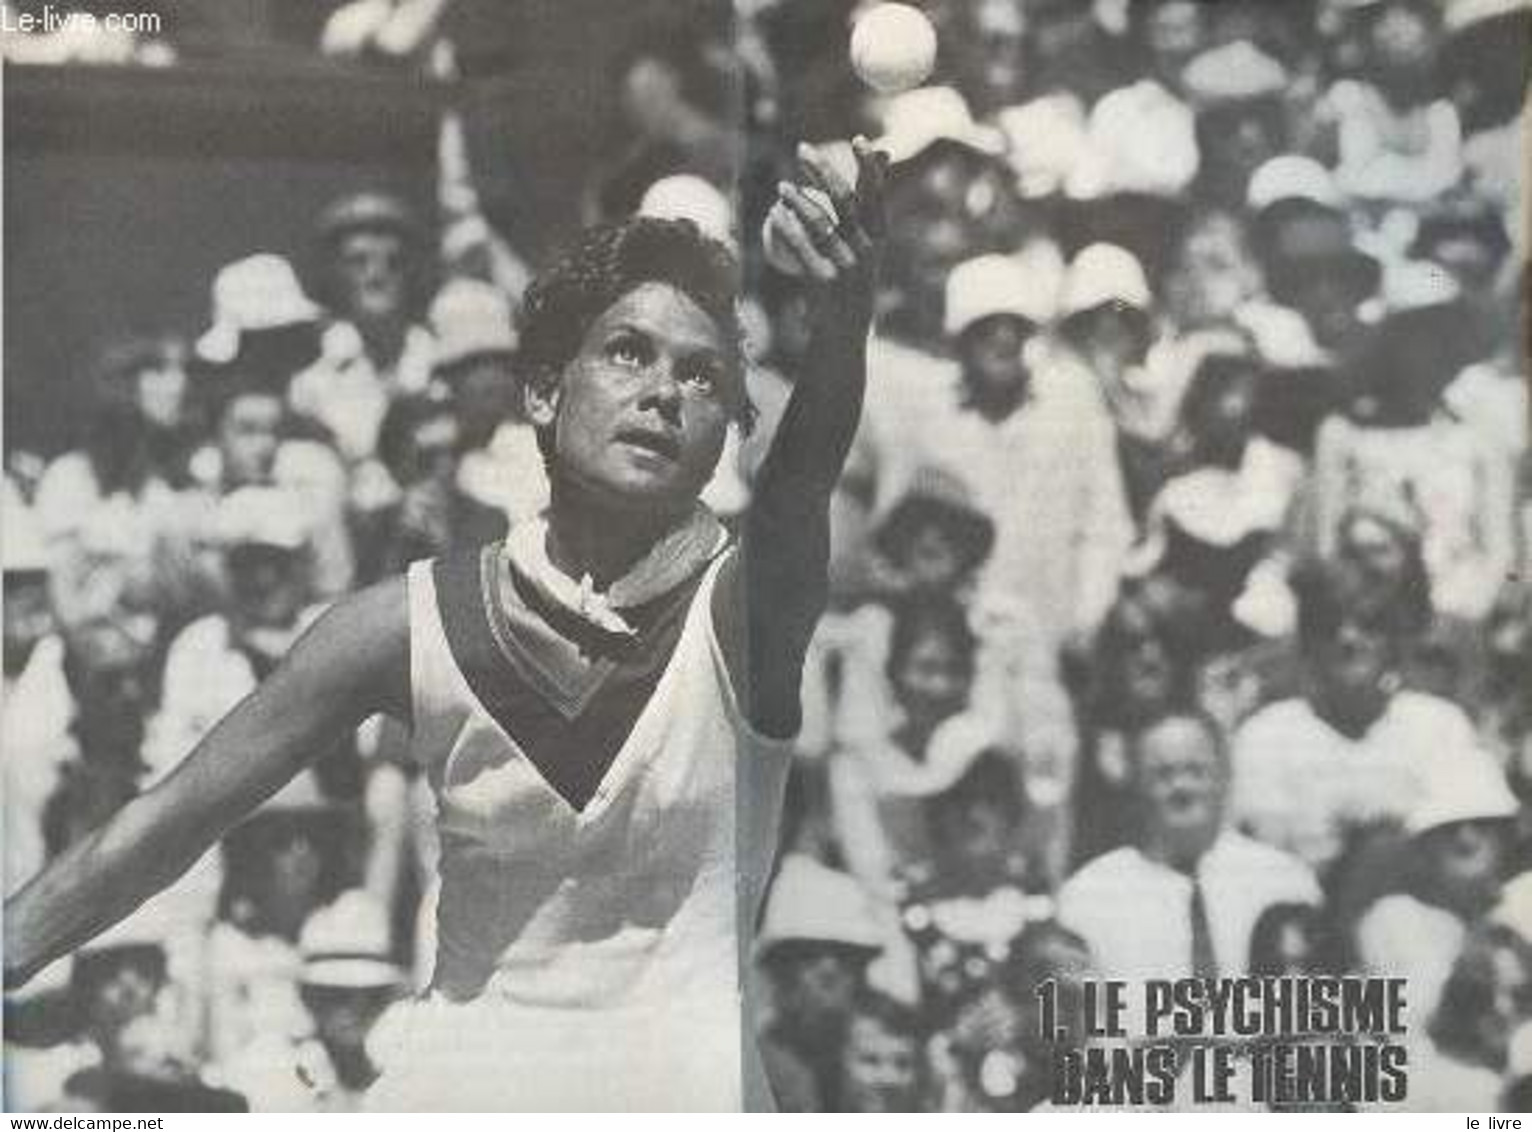 Tennis Et Psychisme Comment Progresser Par La Concentration - Collection Sports Pour Tous. - Gallwey Timothy - 1977 - Libros